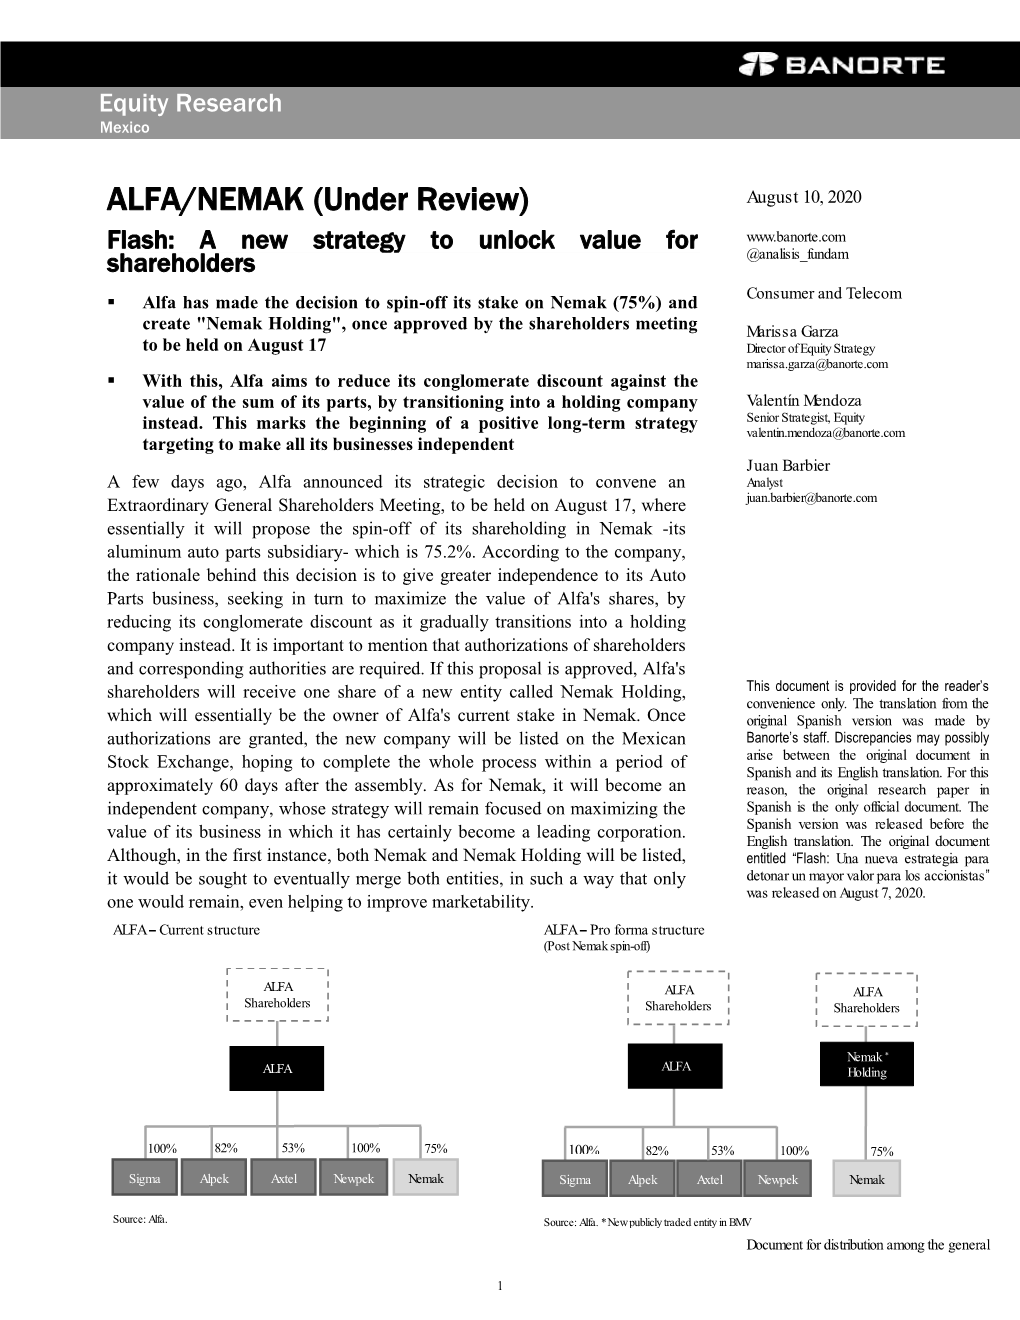 ALFA/NEMAK (Under Review) August 10, 2020